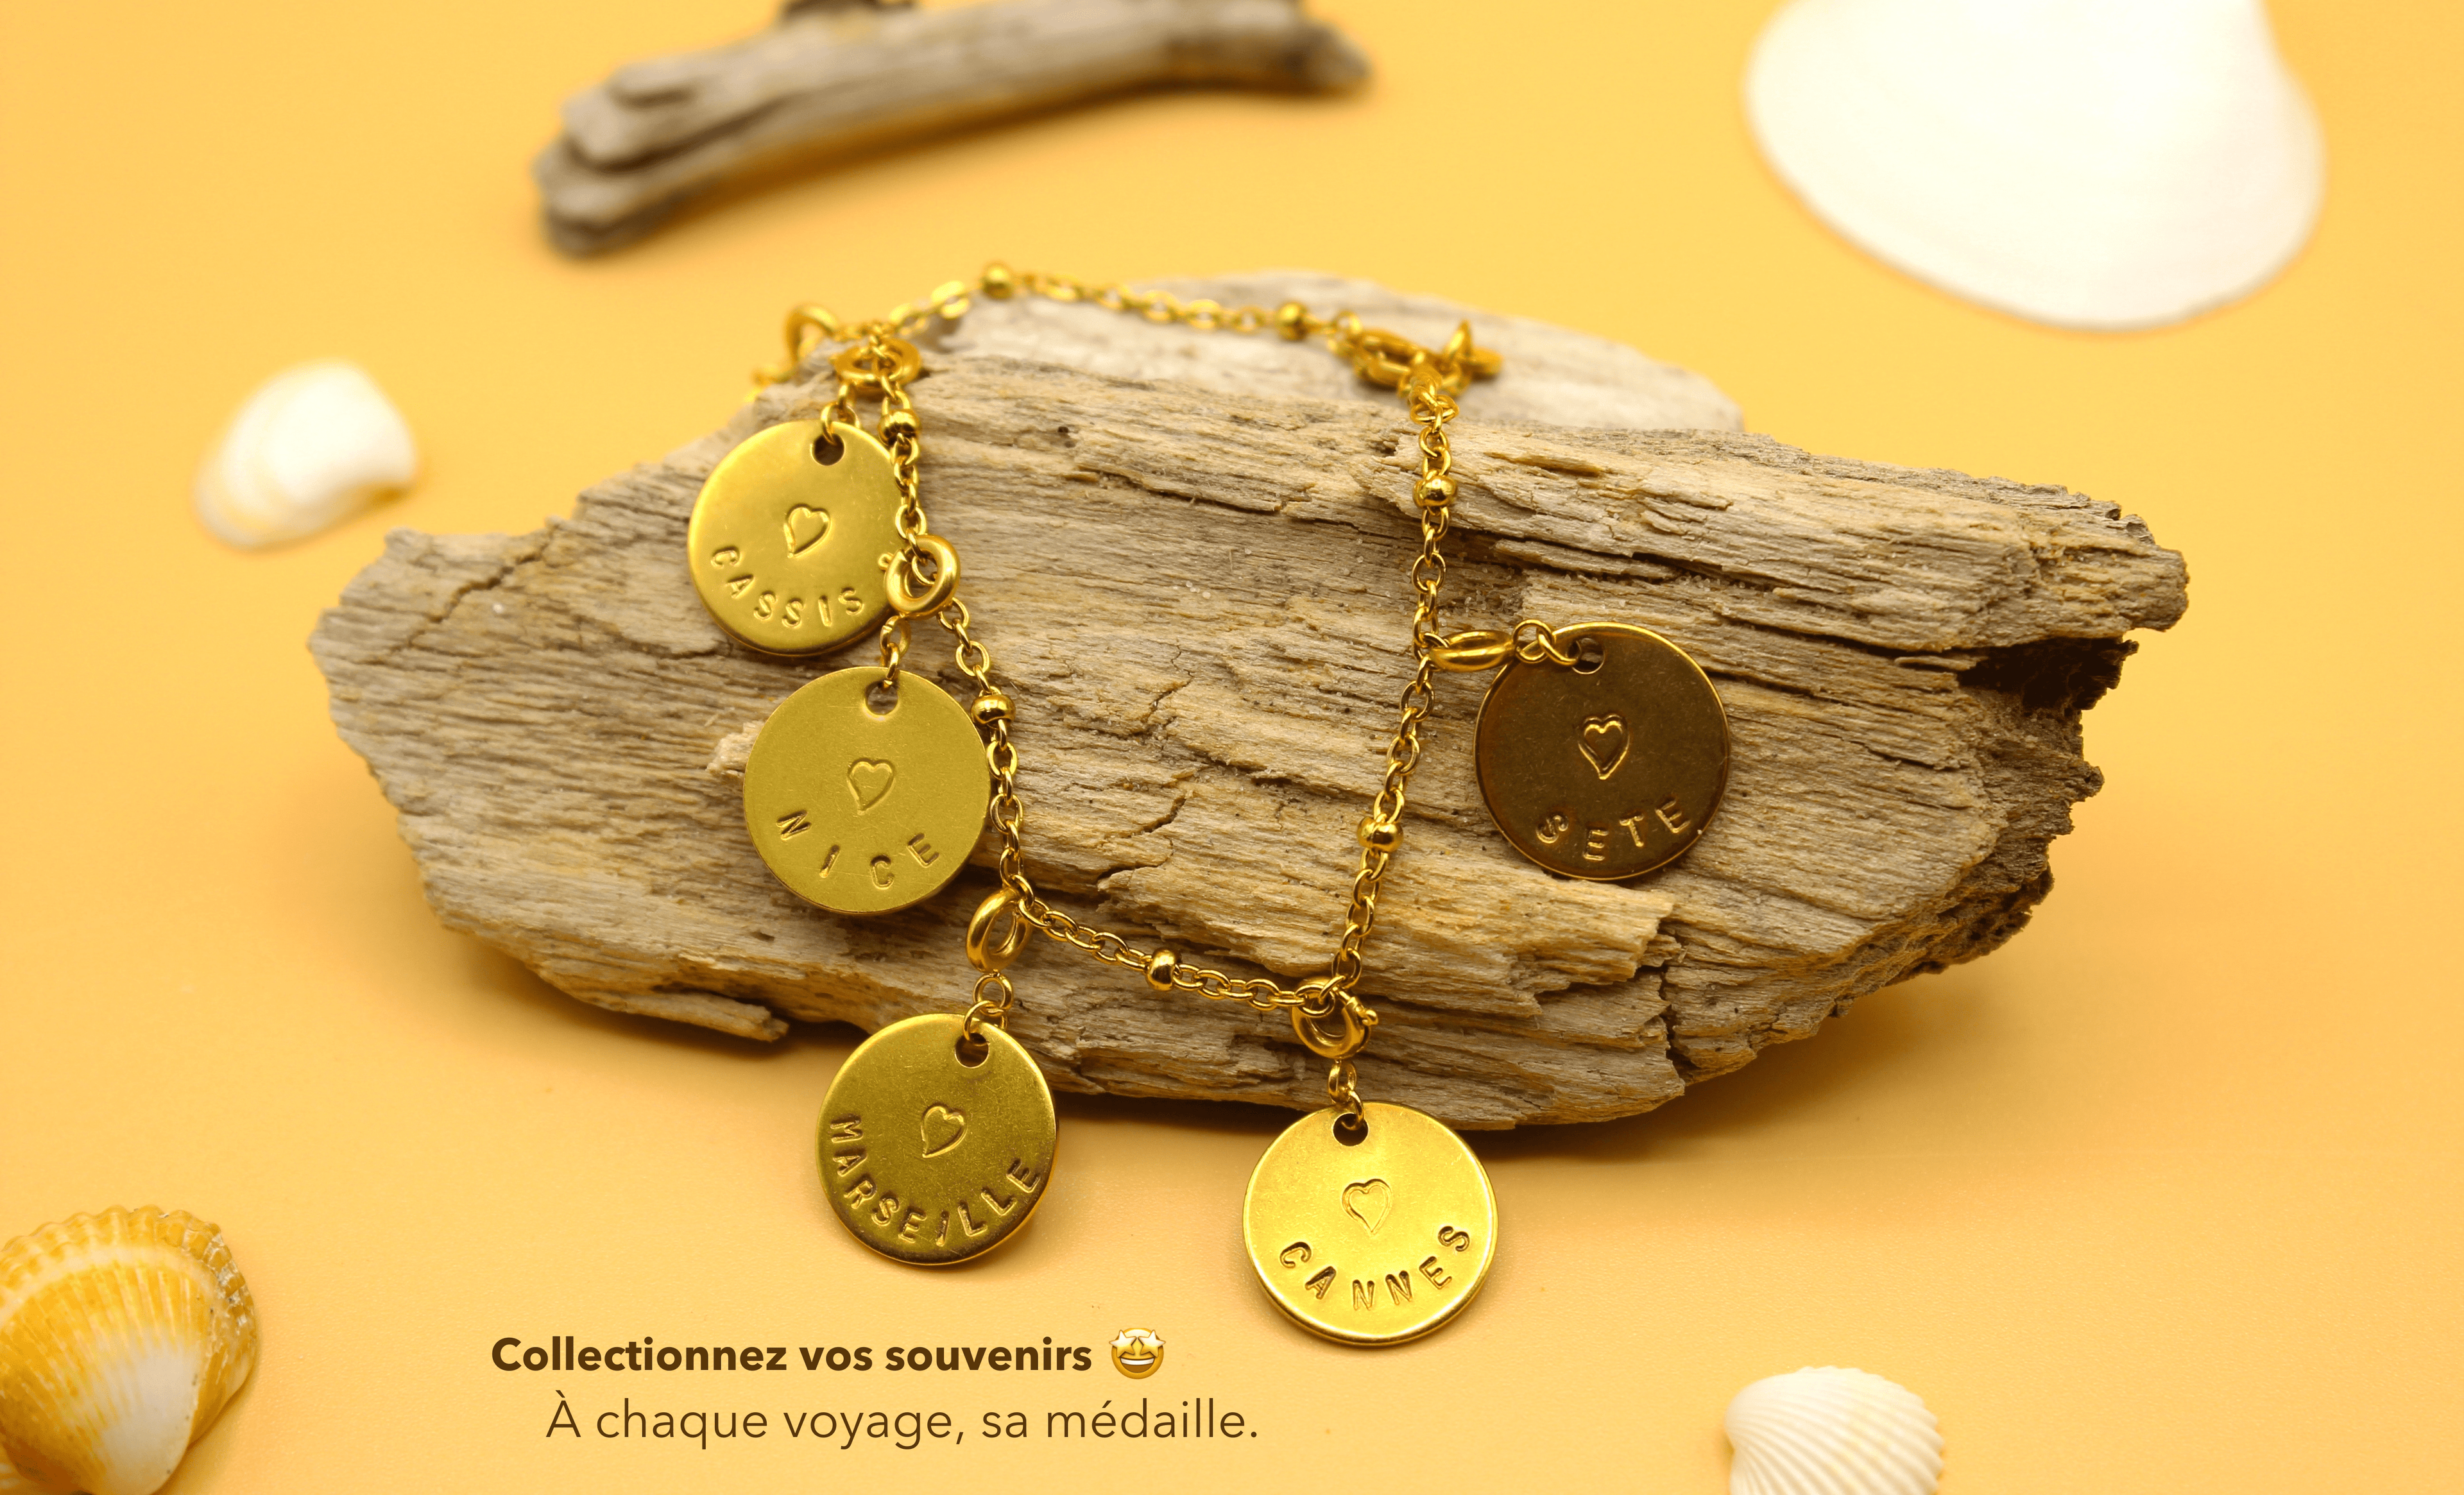 Les bijoux Qoeur chez vous, des médailles personnalisées avec le nom de votre ville estampé à la main en france.